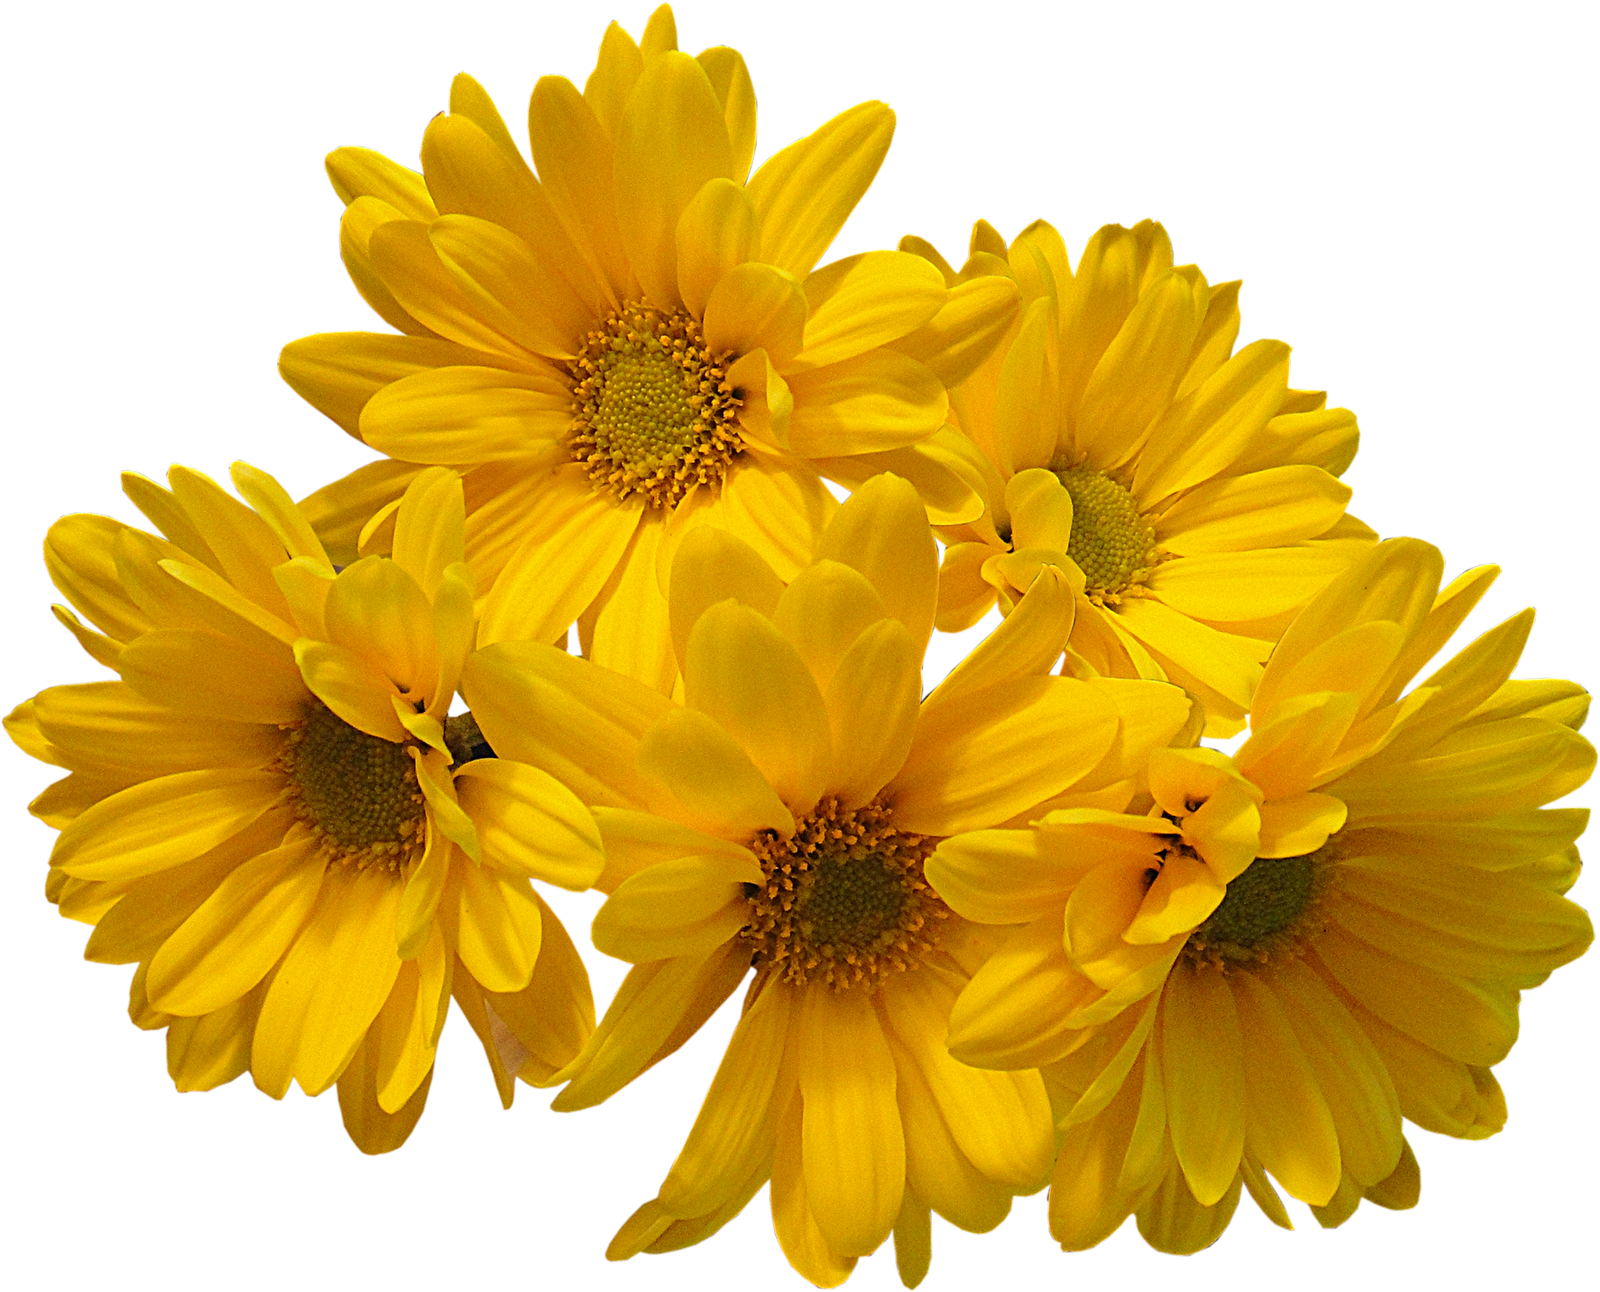 Immagine Trasparente del bouquet dei fiori gialli